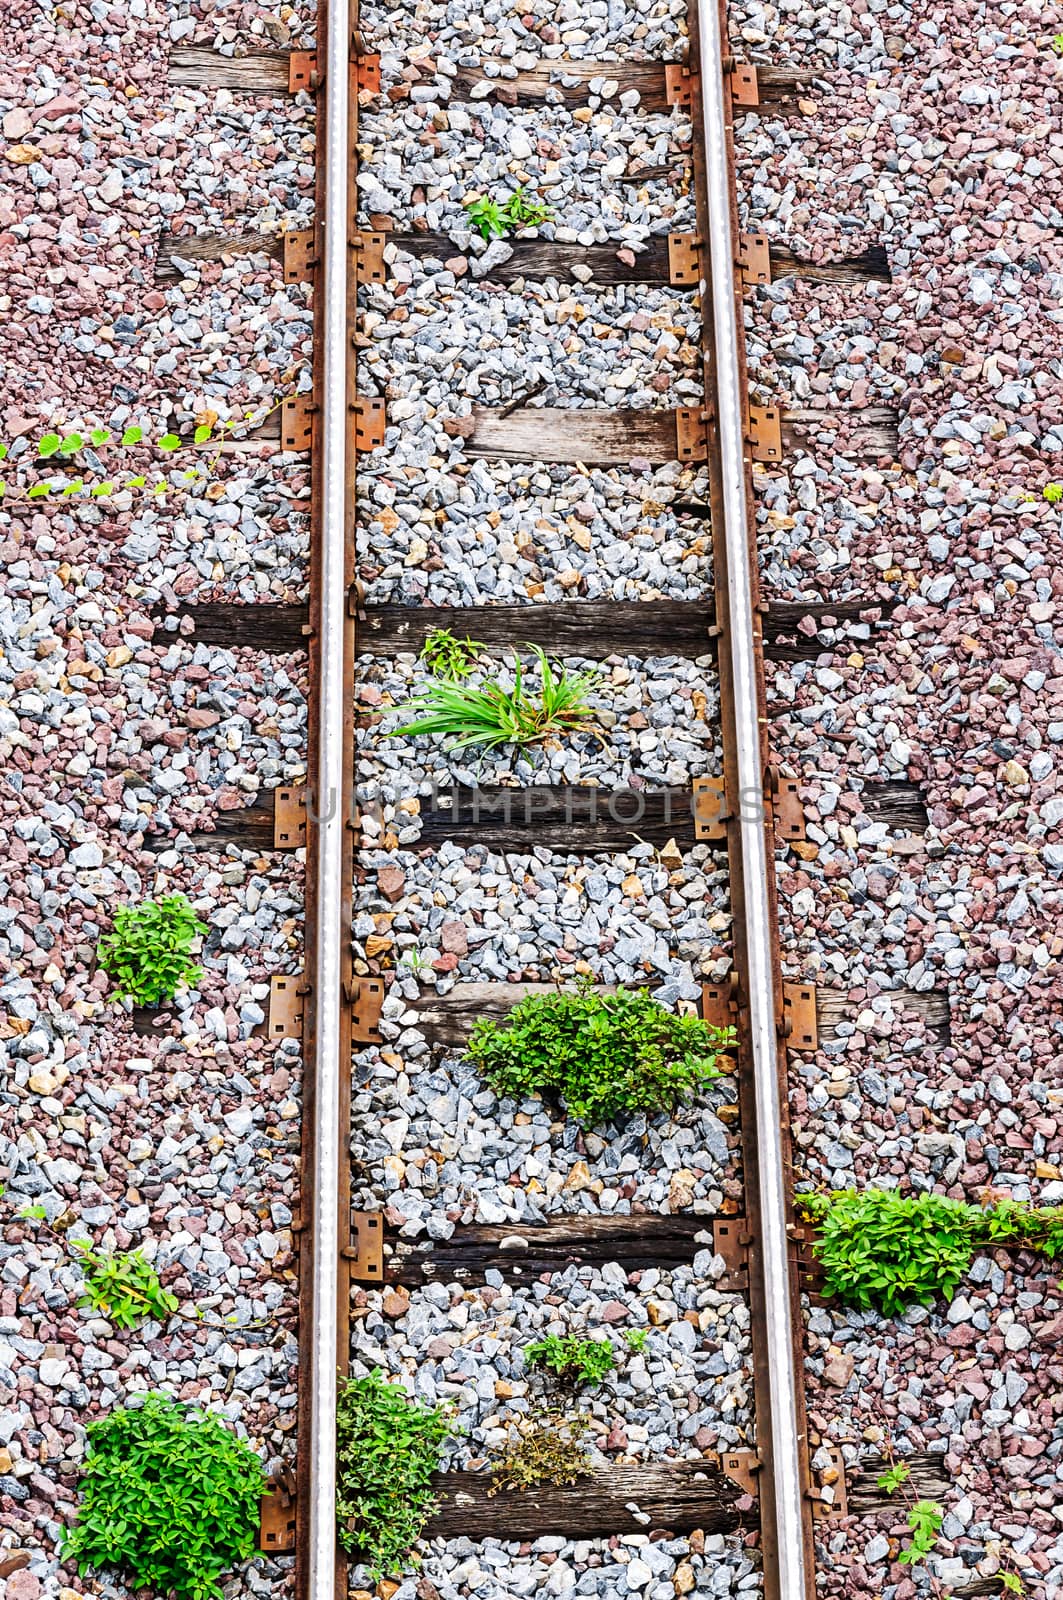 Railway tracks by NuwatPhoto